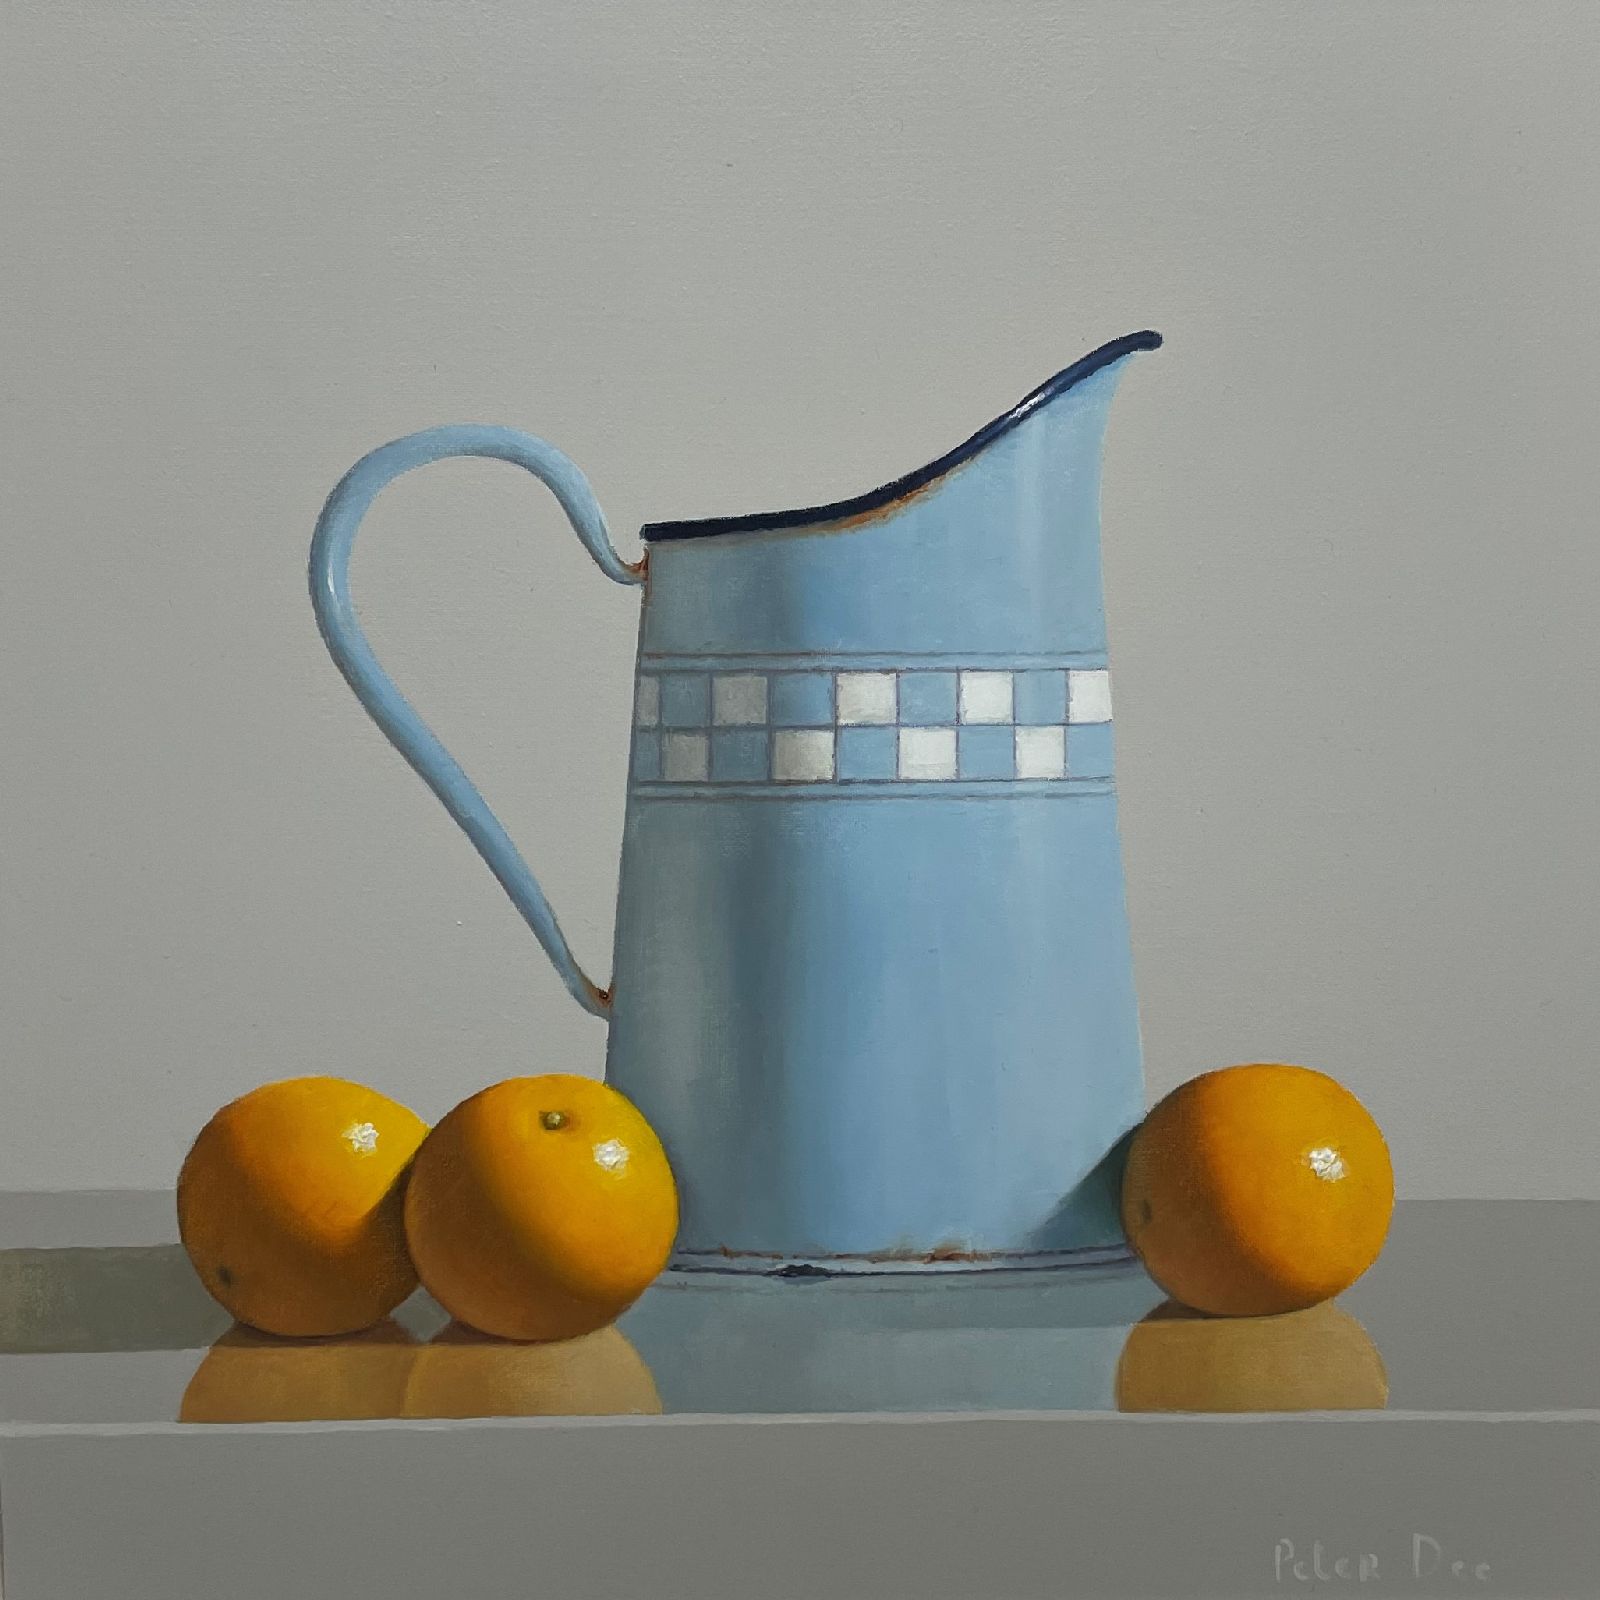 Vintage  Enamelware with Oranges by Peter Dee